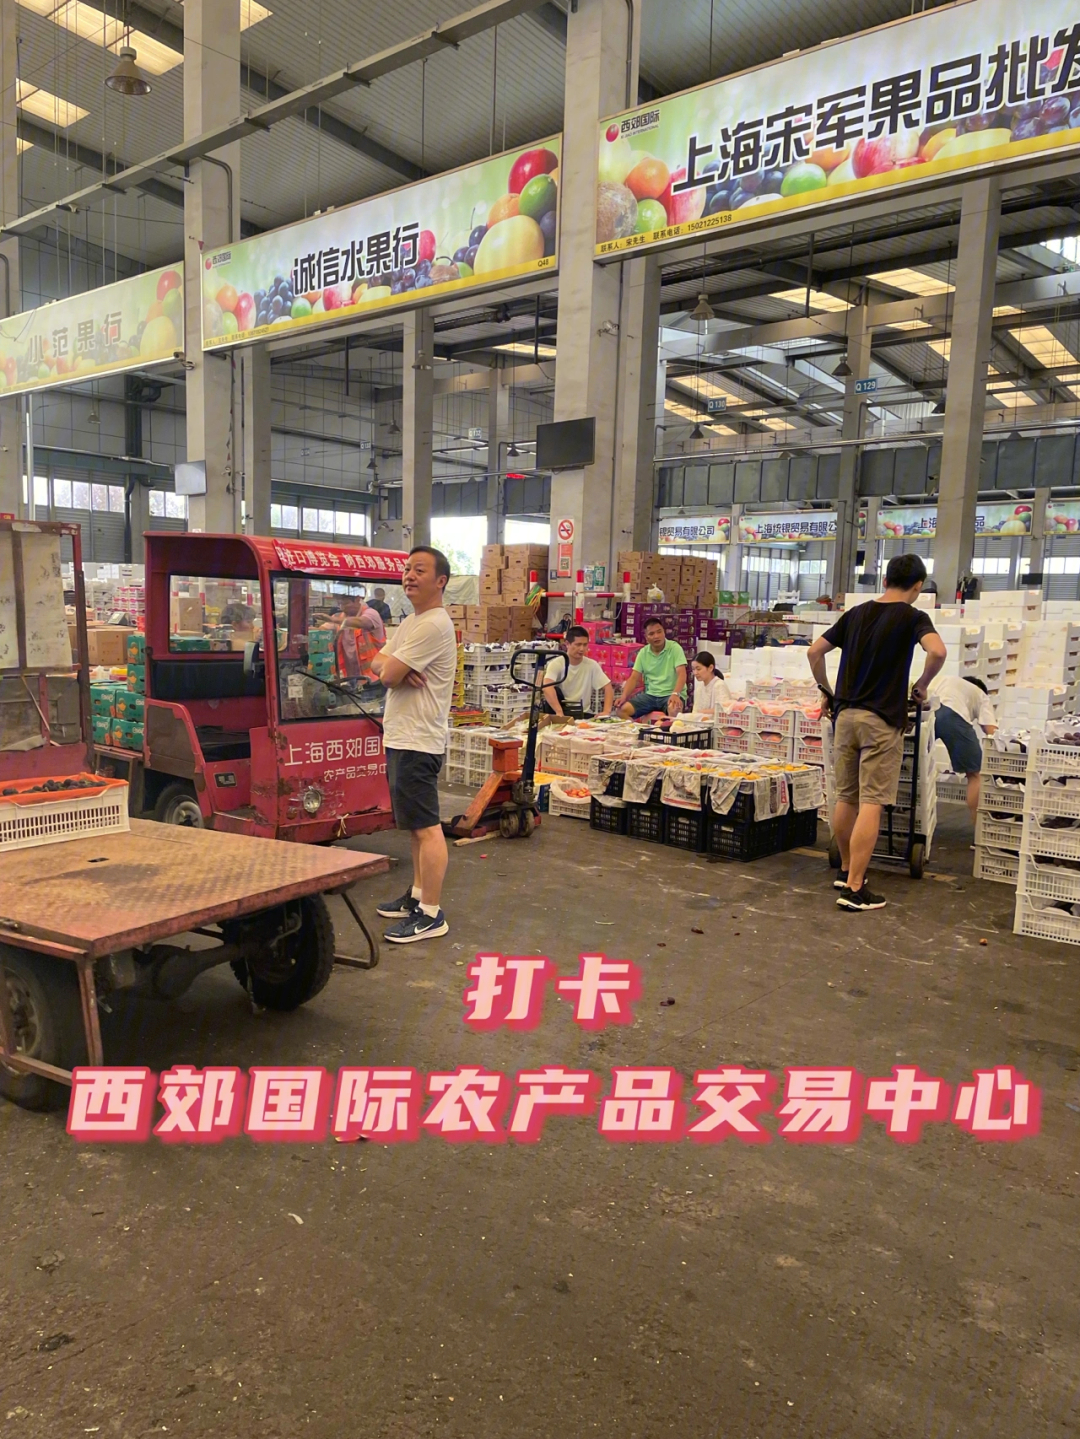 真实评价号称上海最便宜的水果批发市场